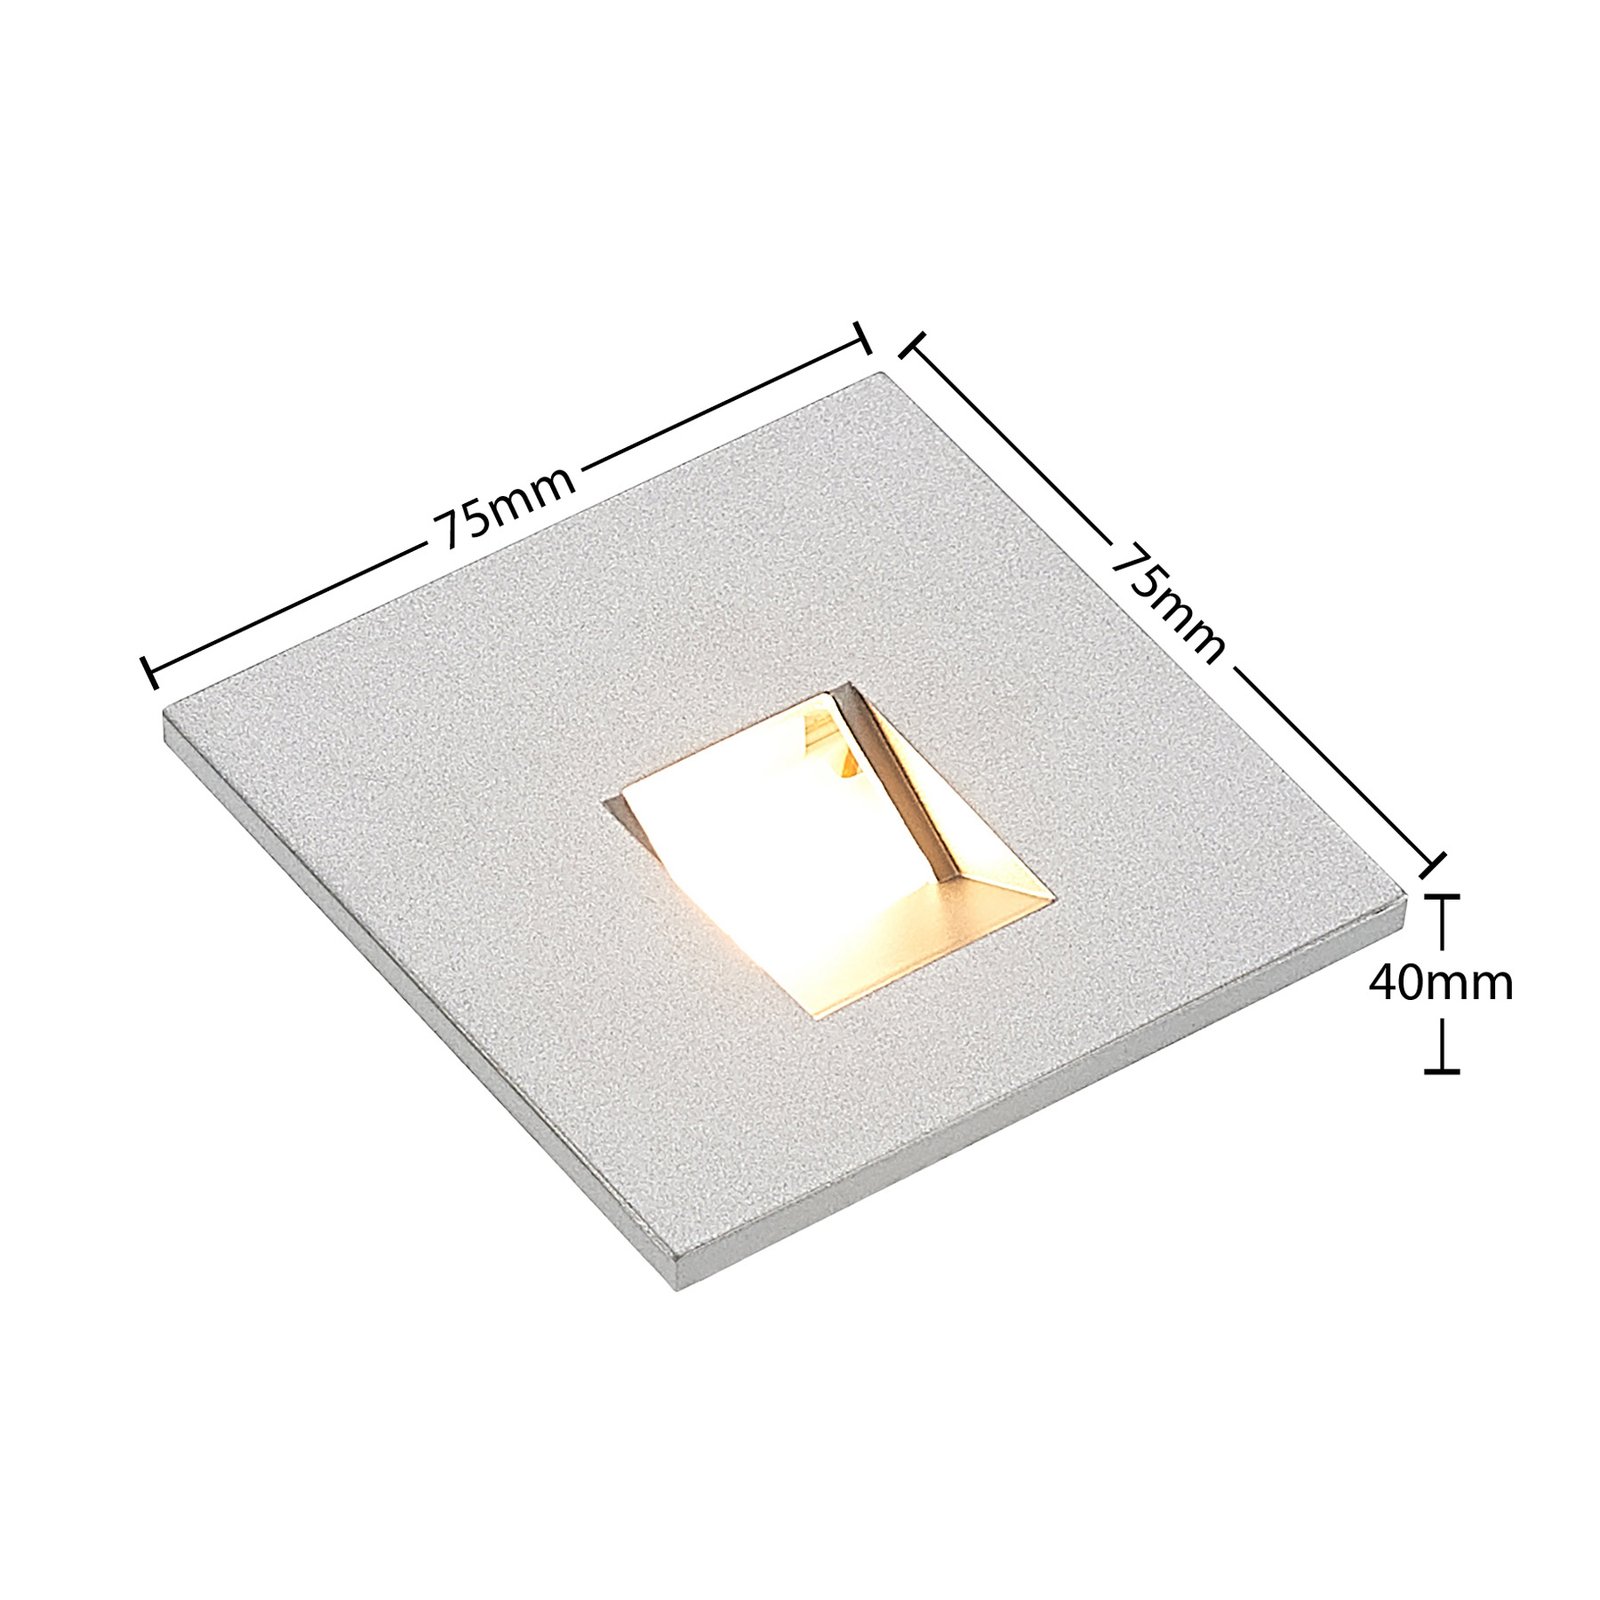 Arcchio Vexi LED inbouwlamp CCT zilver 7,5 cm